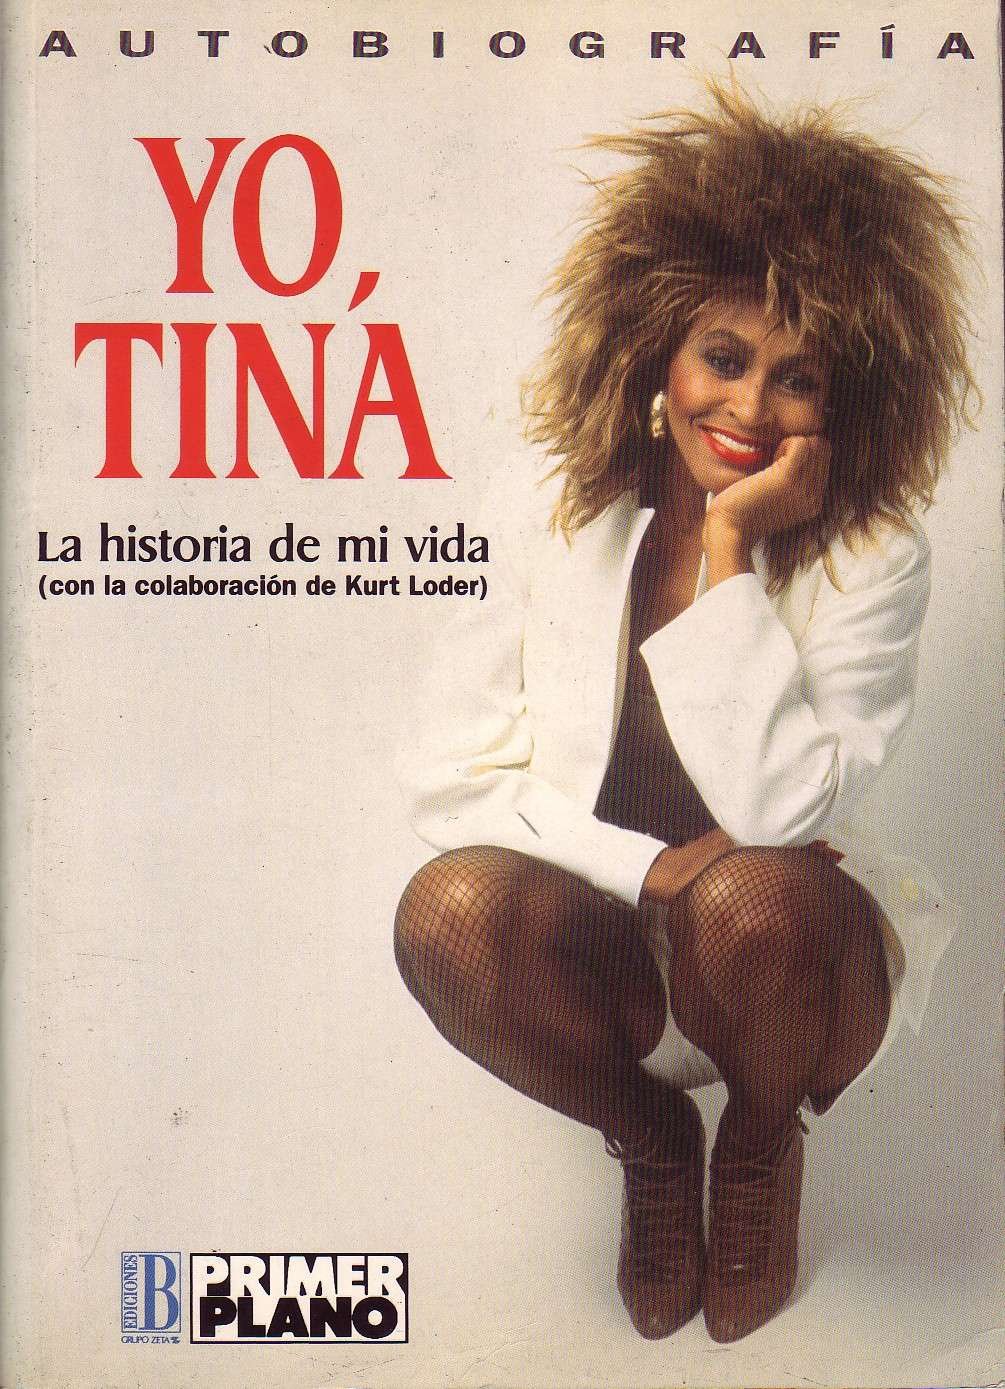 Tina Turner, el icono del rock que se convirtió en un símbolo de coraje y empoderamiento femenino 2